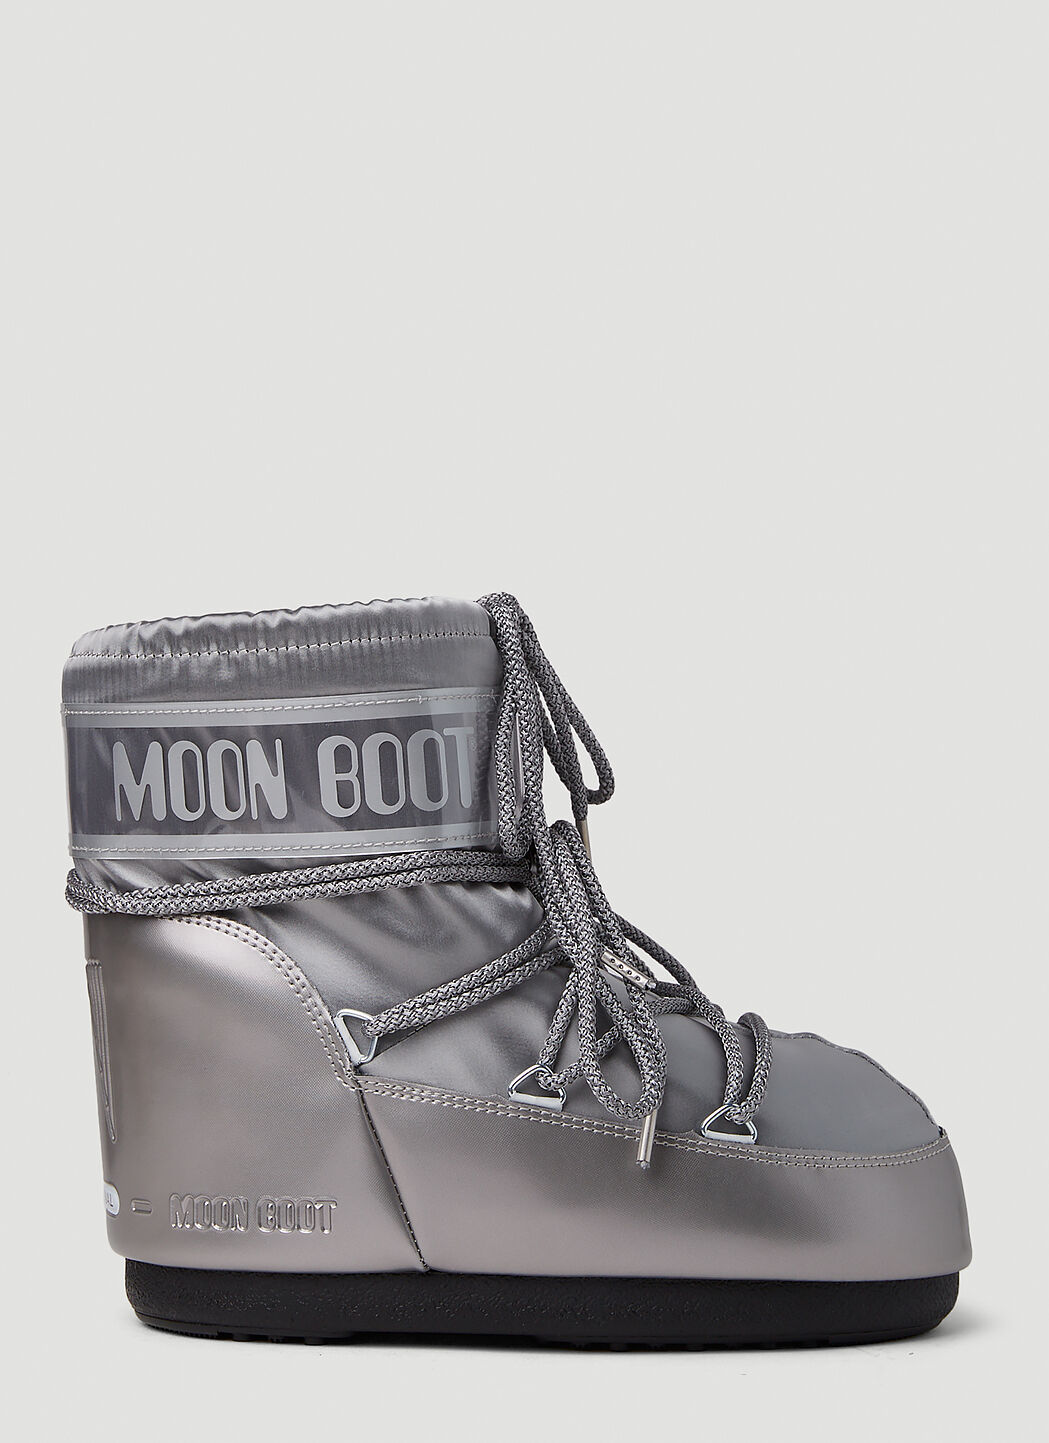 Moon Boot 아이콘 로우 글랜스 스노우 부츠 블랙 mnb0355001